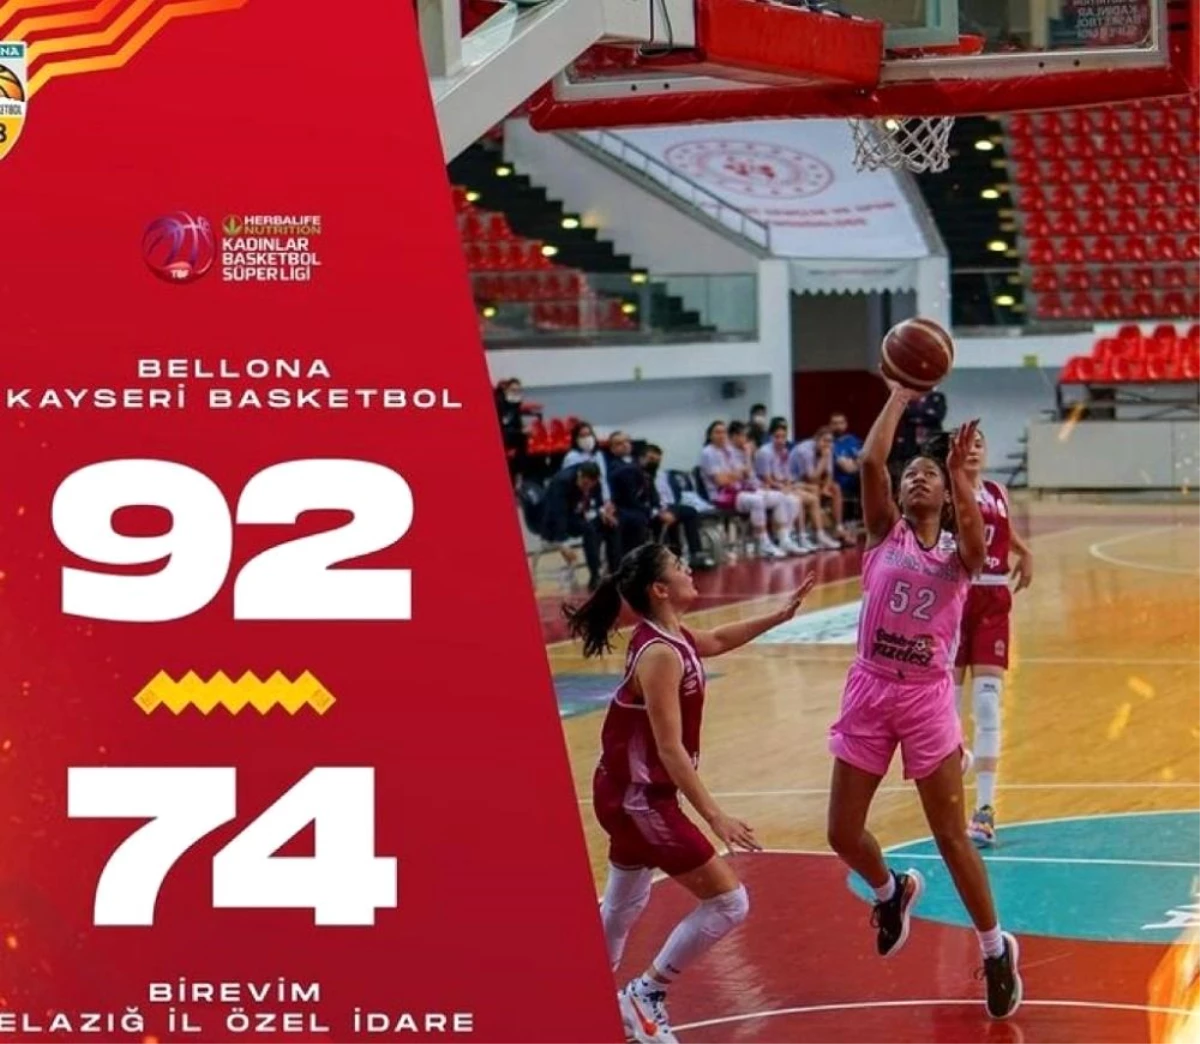 Bellona Kayseri Basketbol: 92 Bir Evim Elazığ Özel İdare: 74